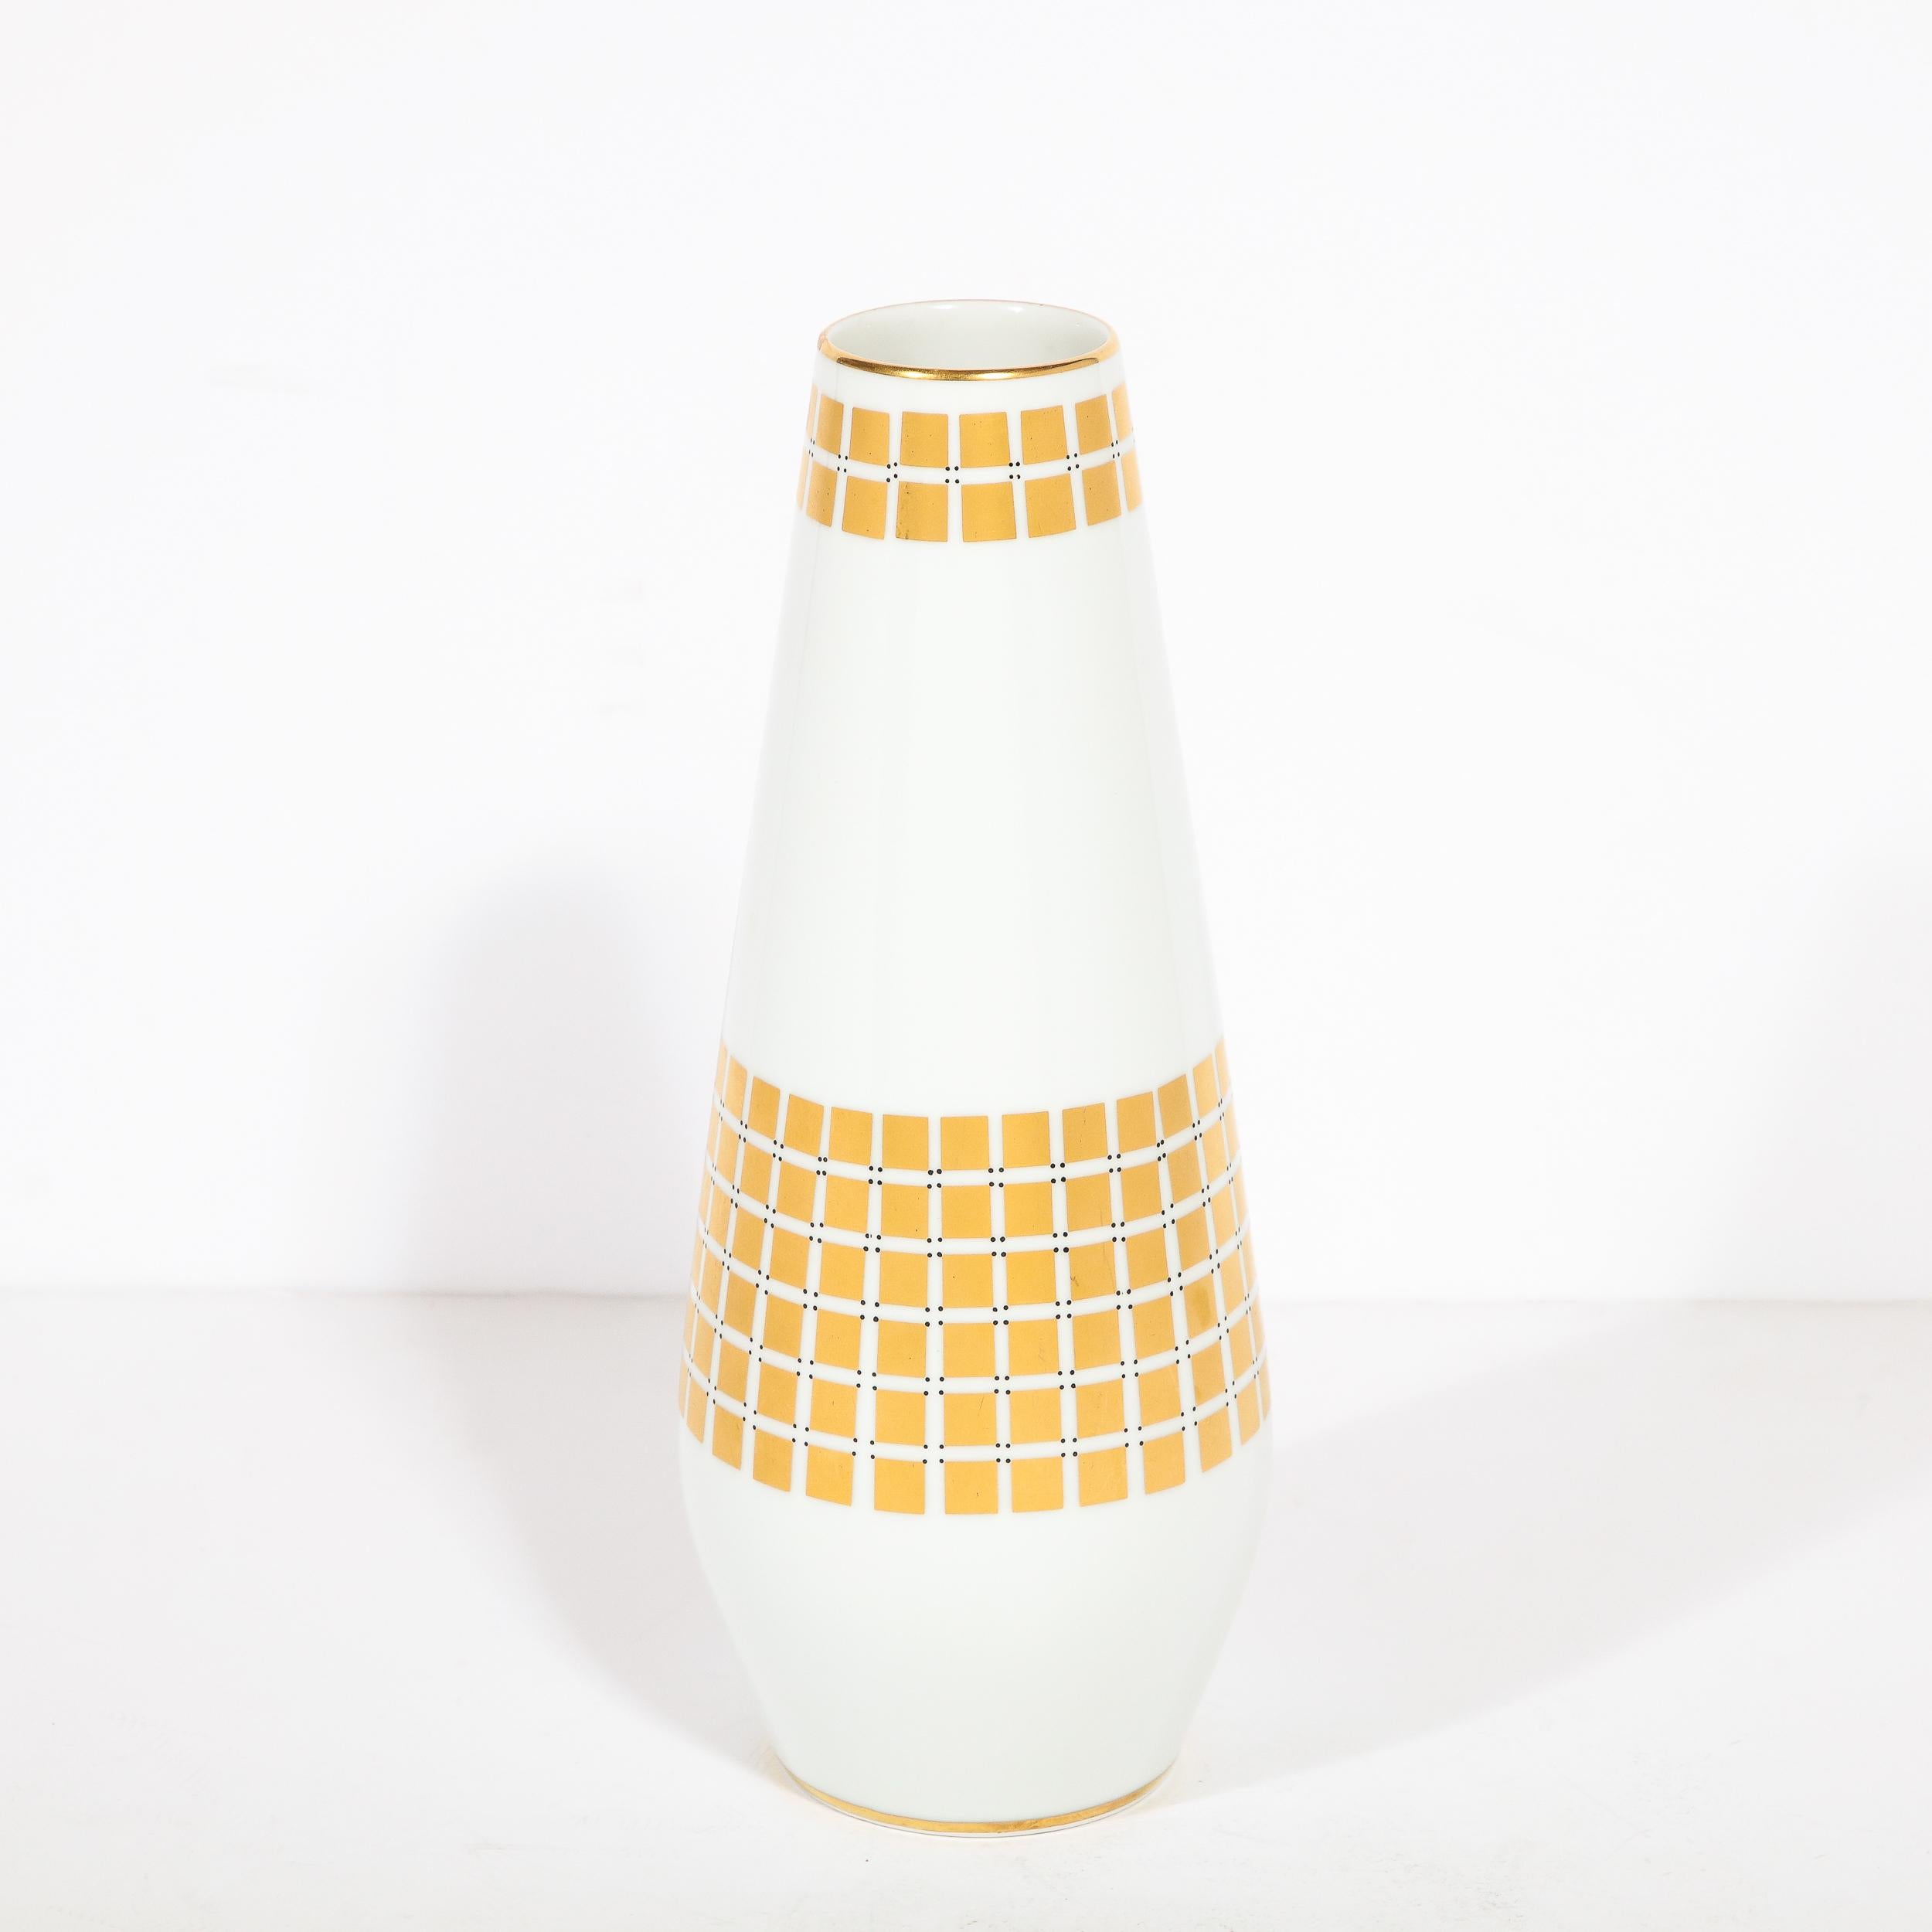 
Cet élégant vase en porcelaine de style moderne du milieu du siècle a été réalisé par l'estimable fabricant Tirschenheut en Allemagne vers 1960. Il présente un corps cylindrique en porcelaine blanche qui s'évase subtilement de sa base circulaire